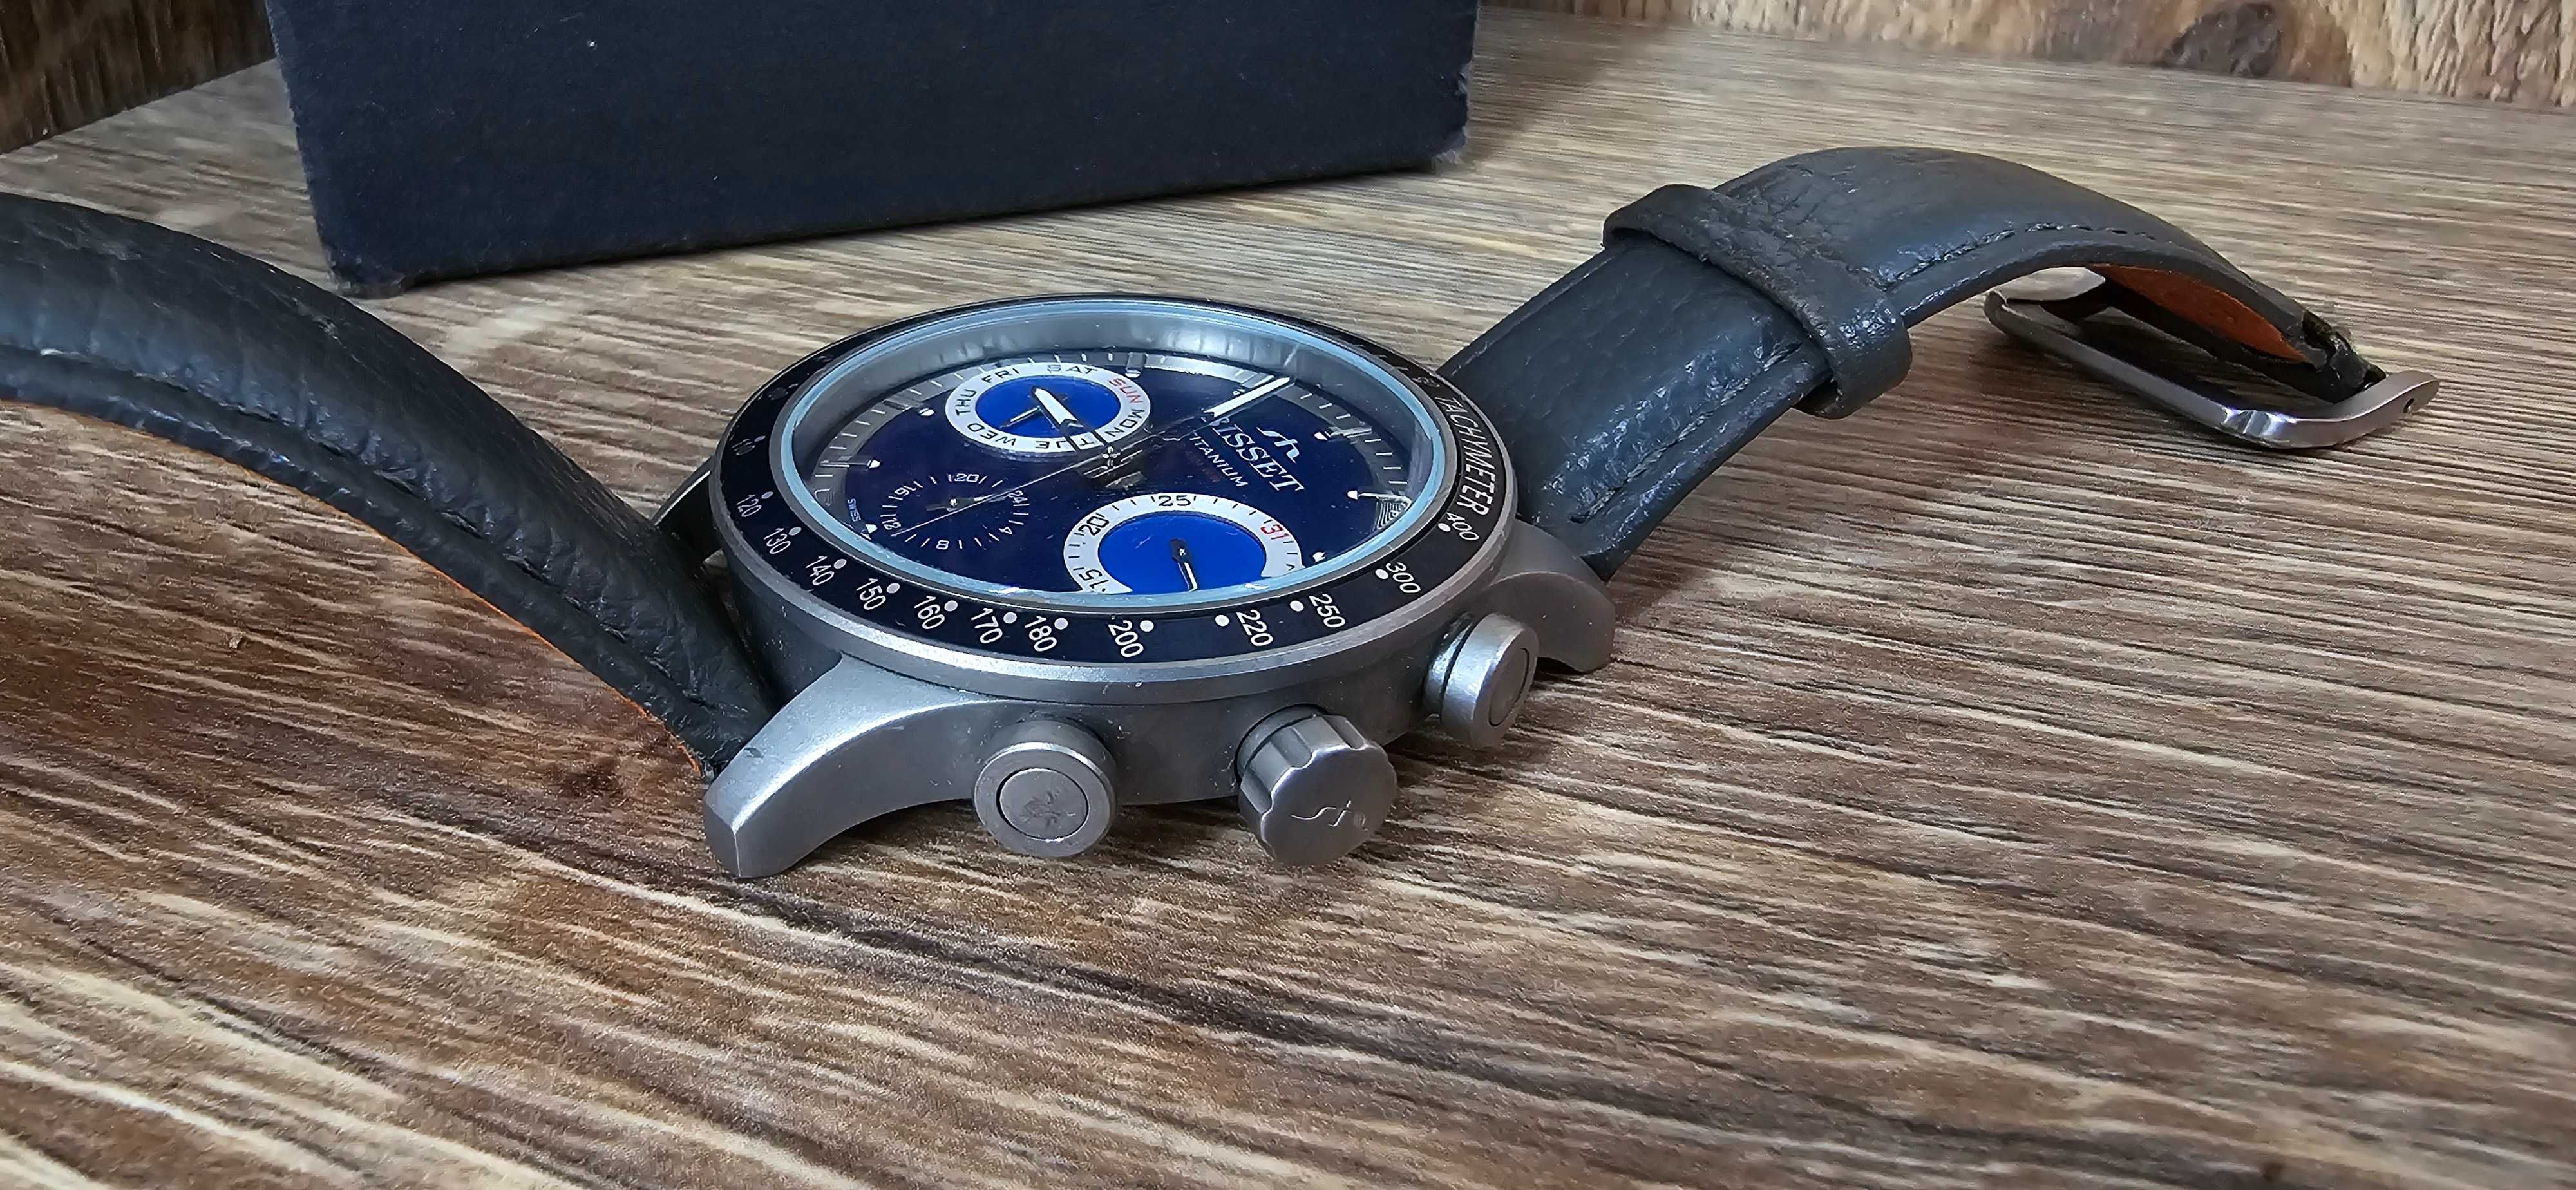 Zegarek Bisset Titanium BSCE36 Pudełko